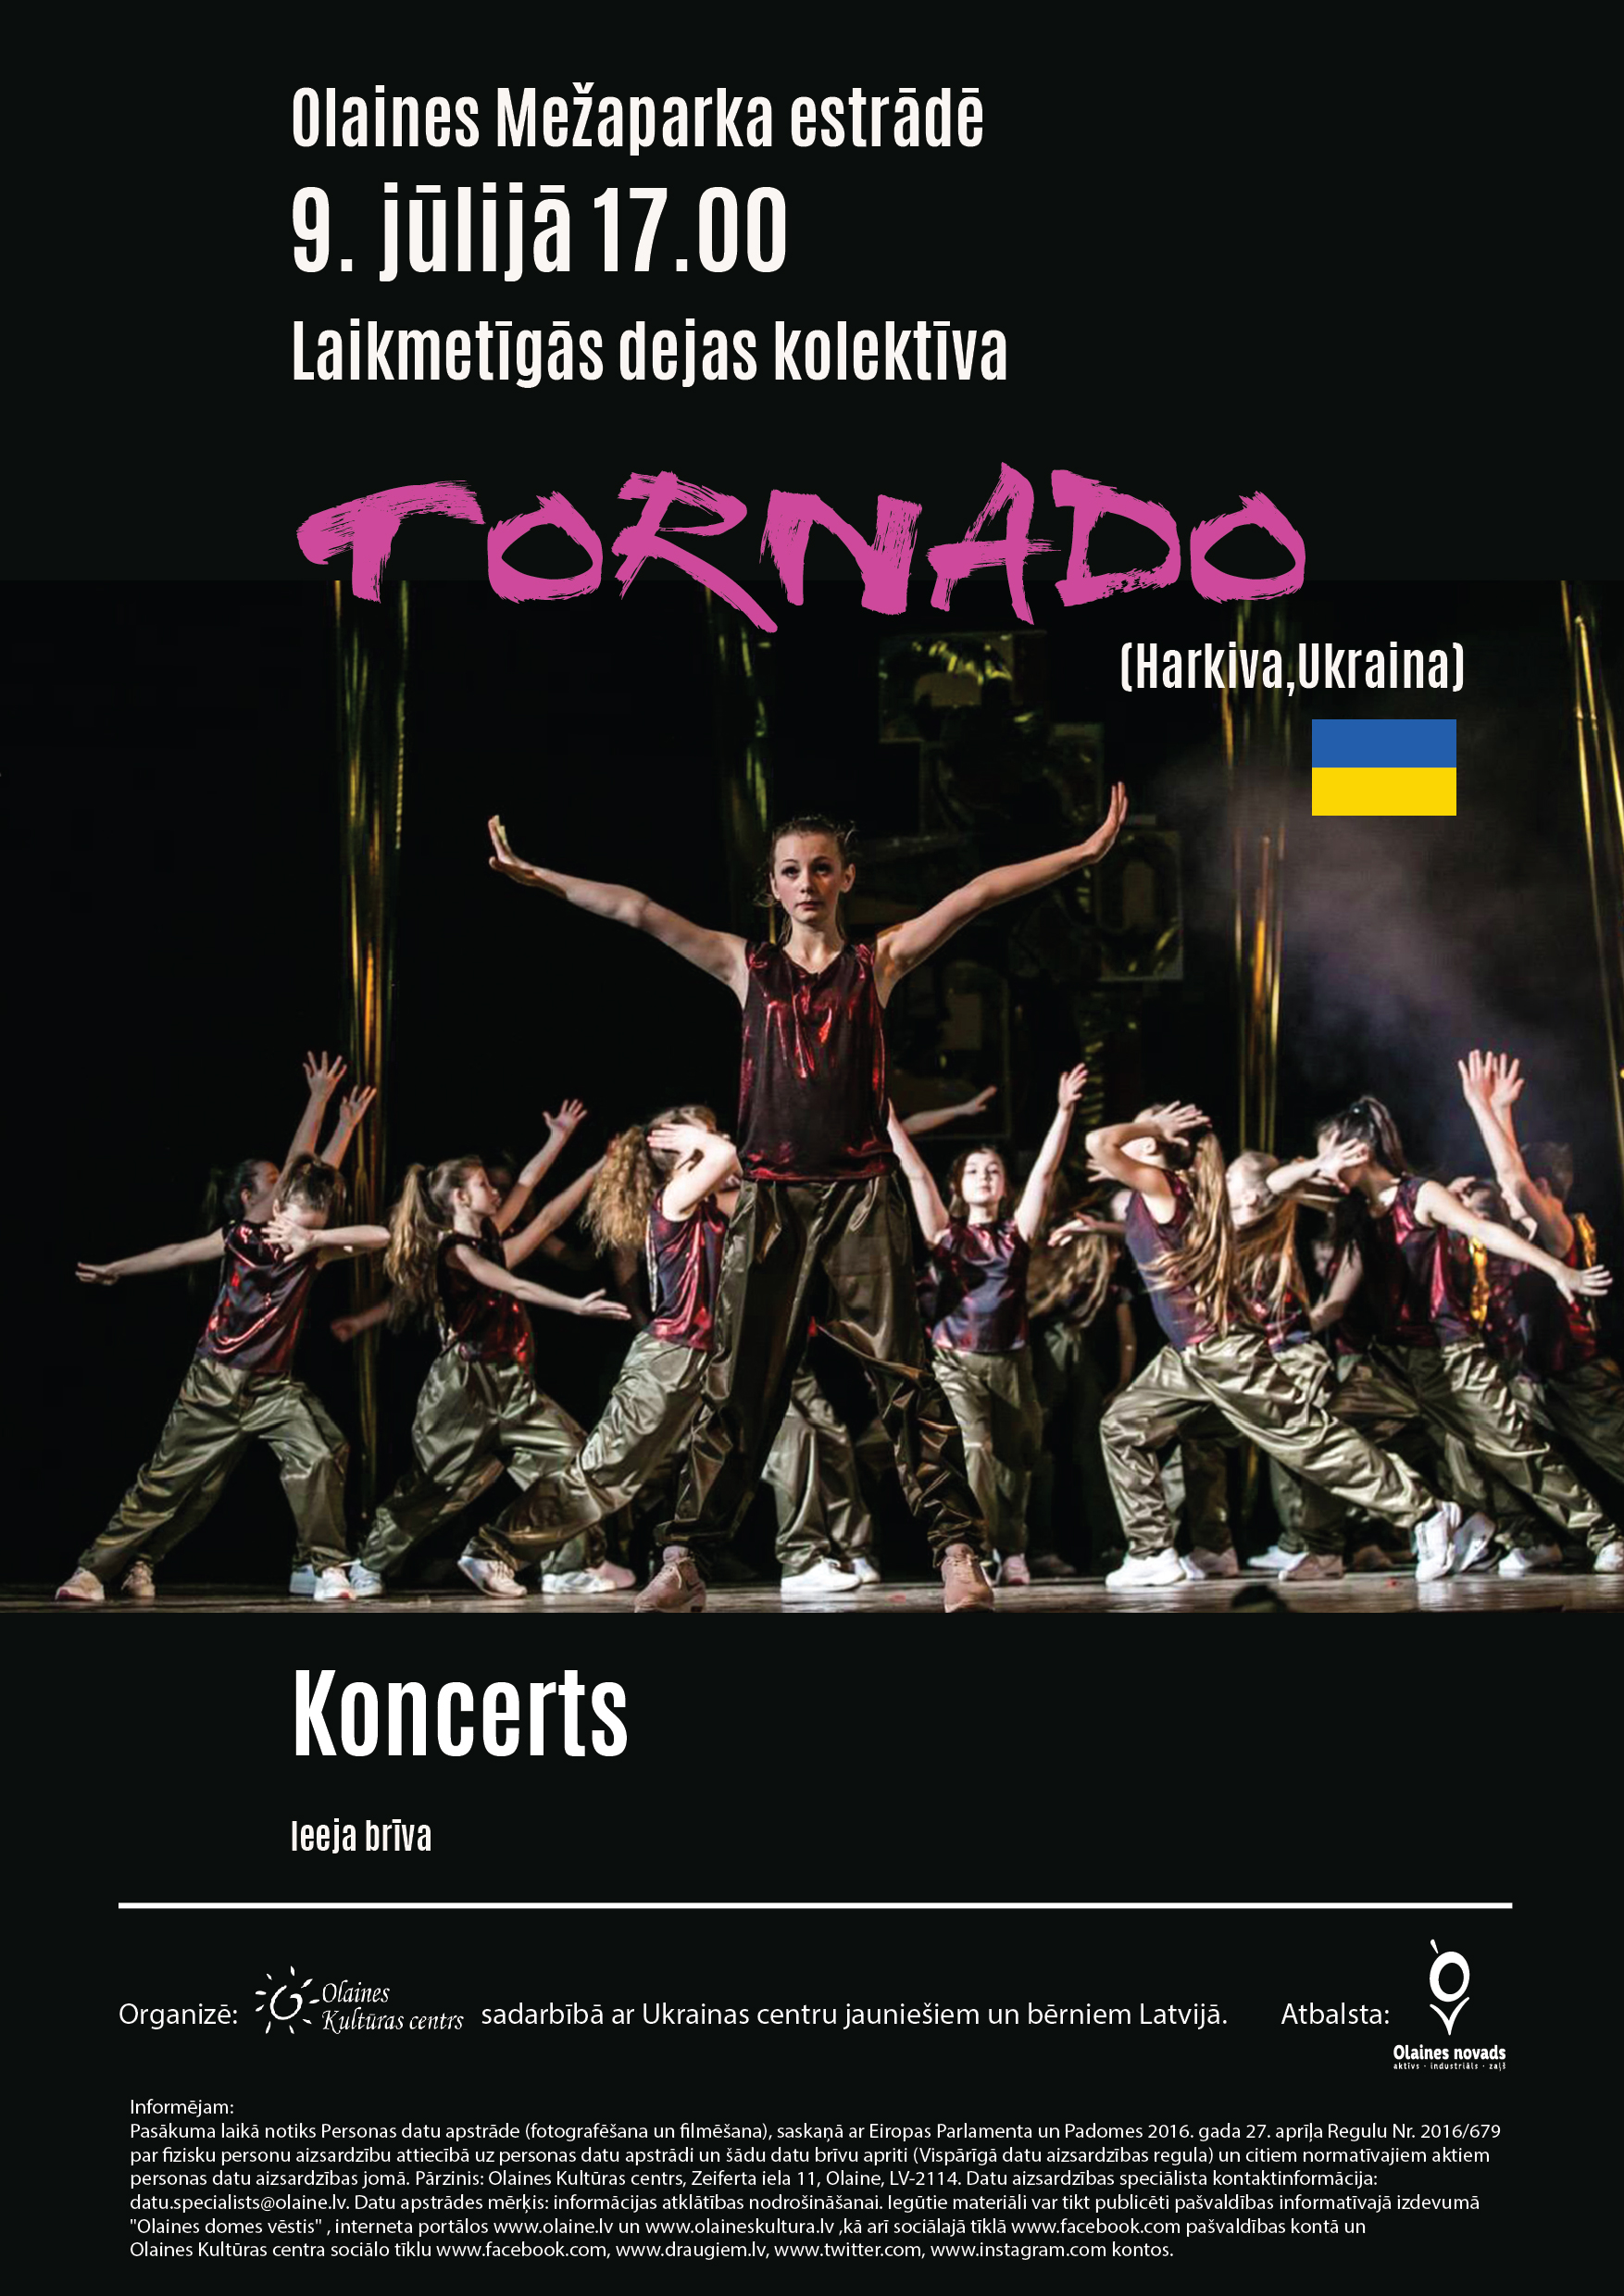 Laikmetīgās dejas kolektīva "Tornado" (Harkiva, Ukraina) koncerta afiša